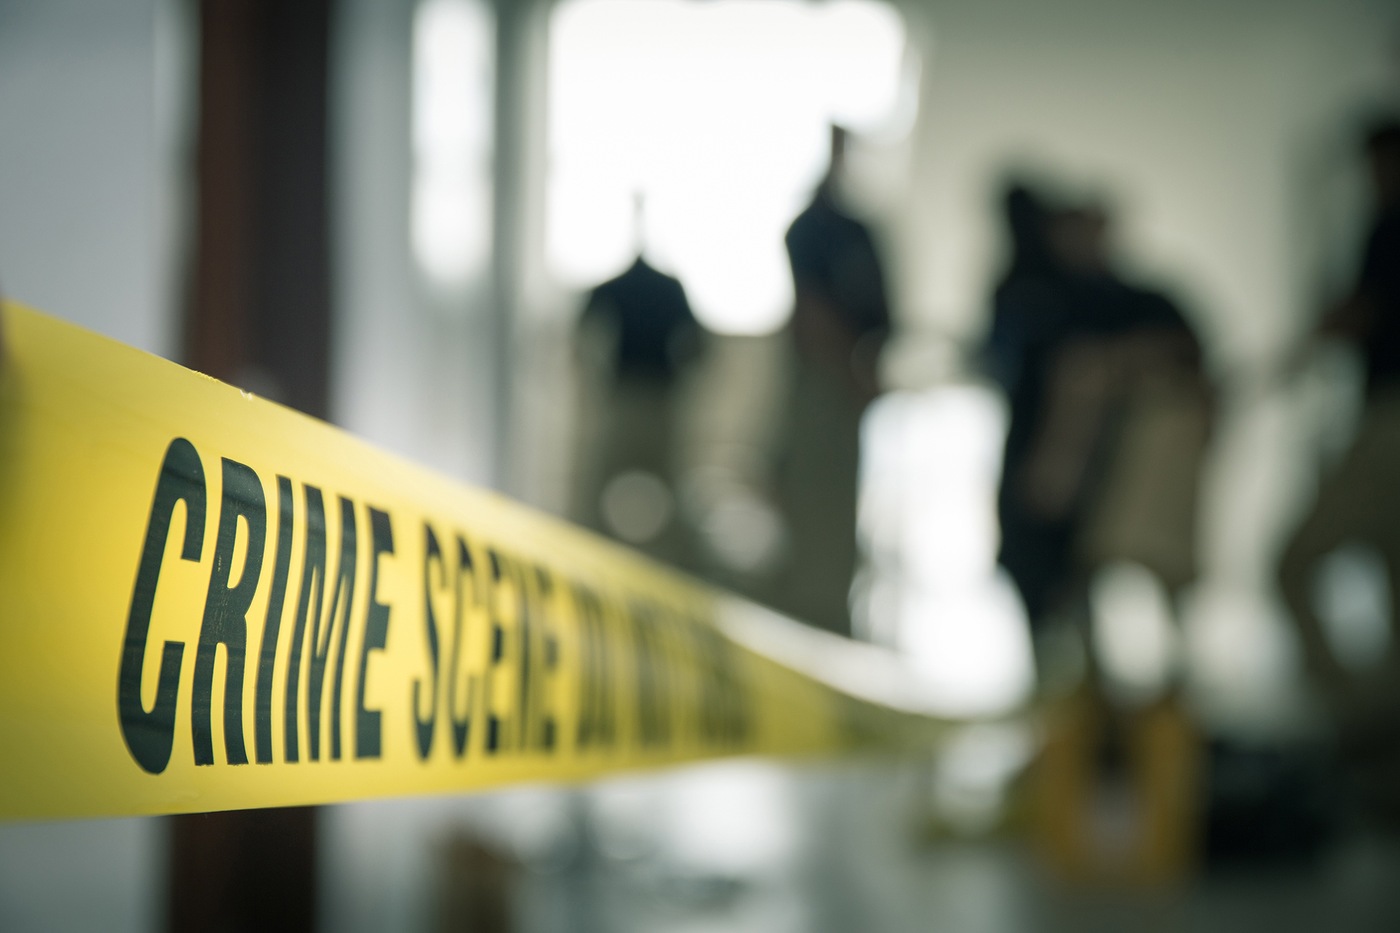 Stock image of crime scene tape with blurred crime scene investigators in the background. 